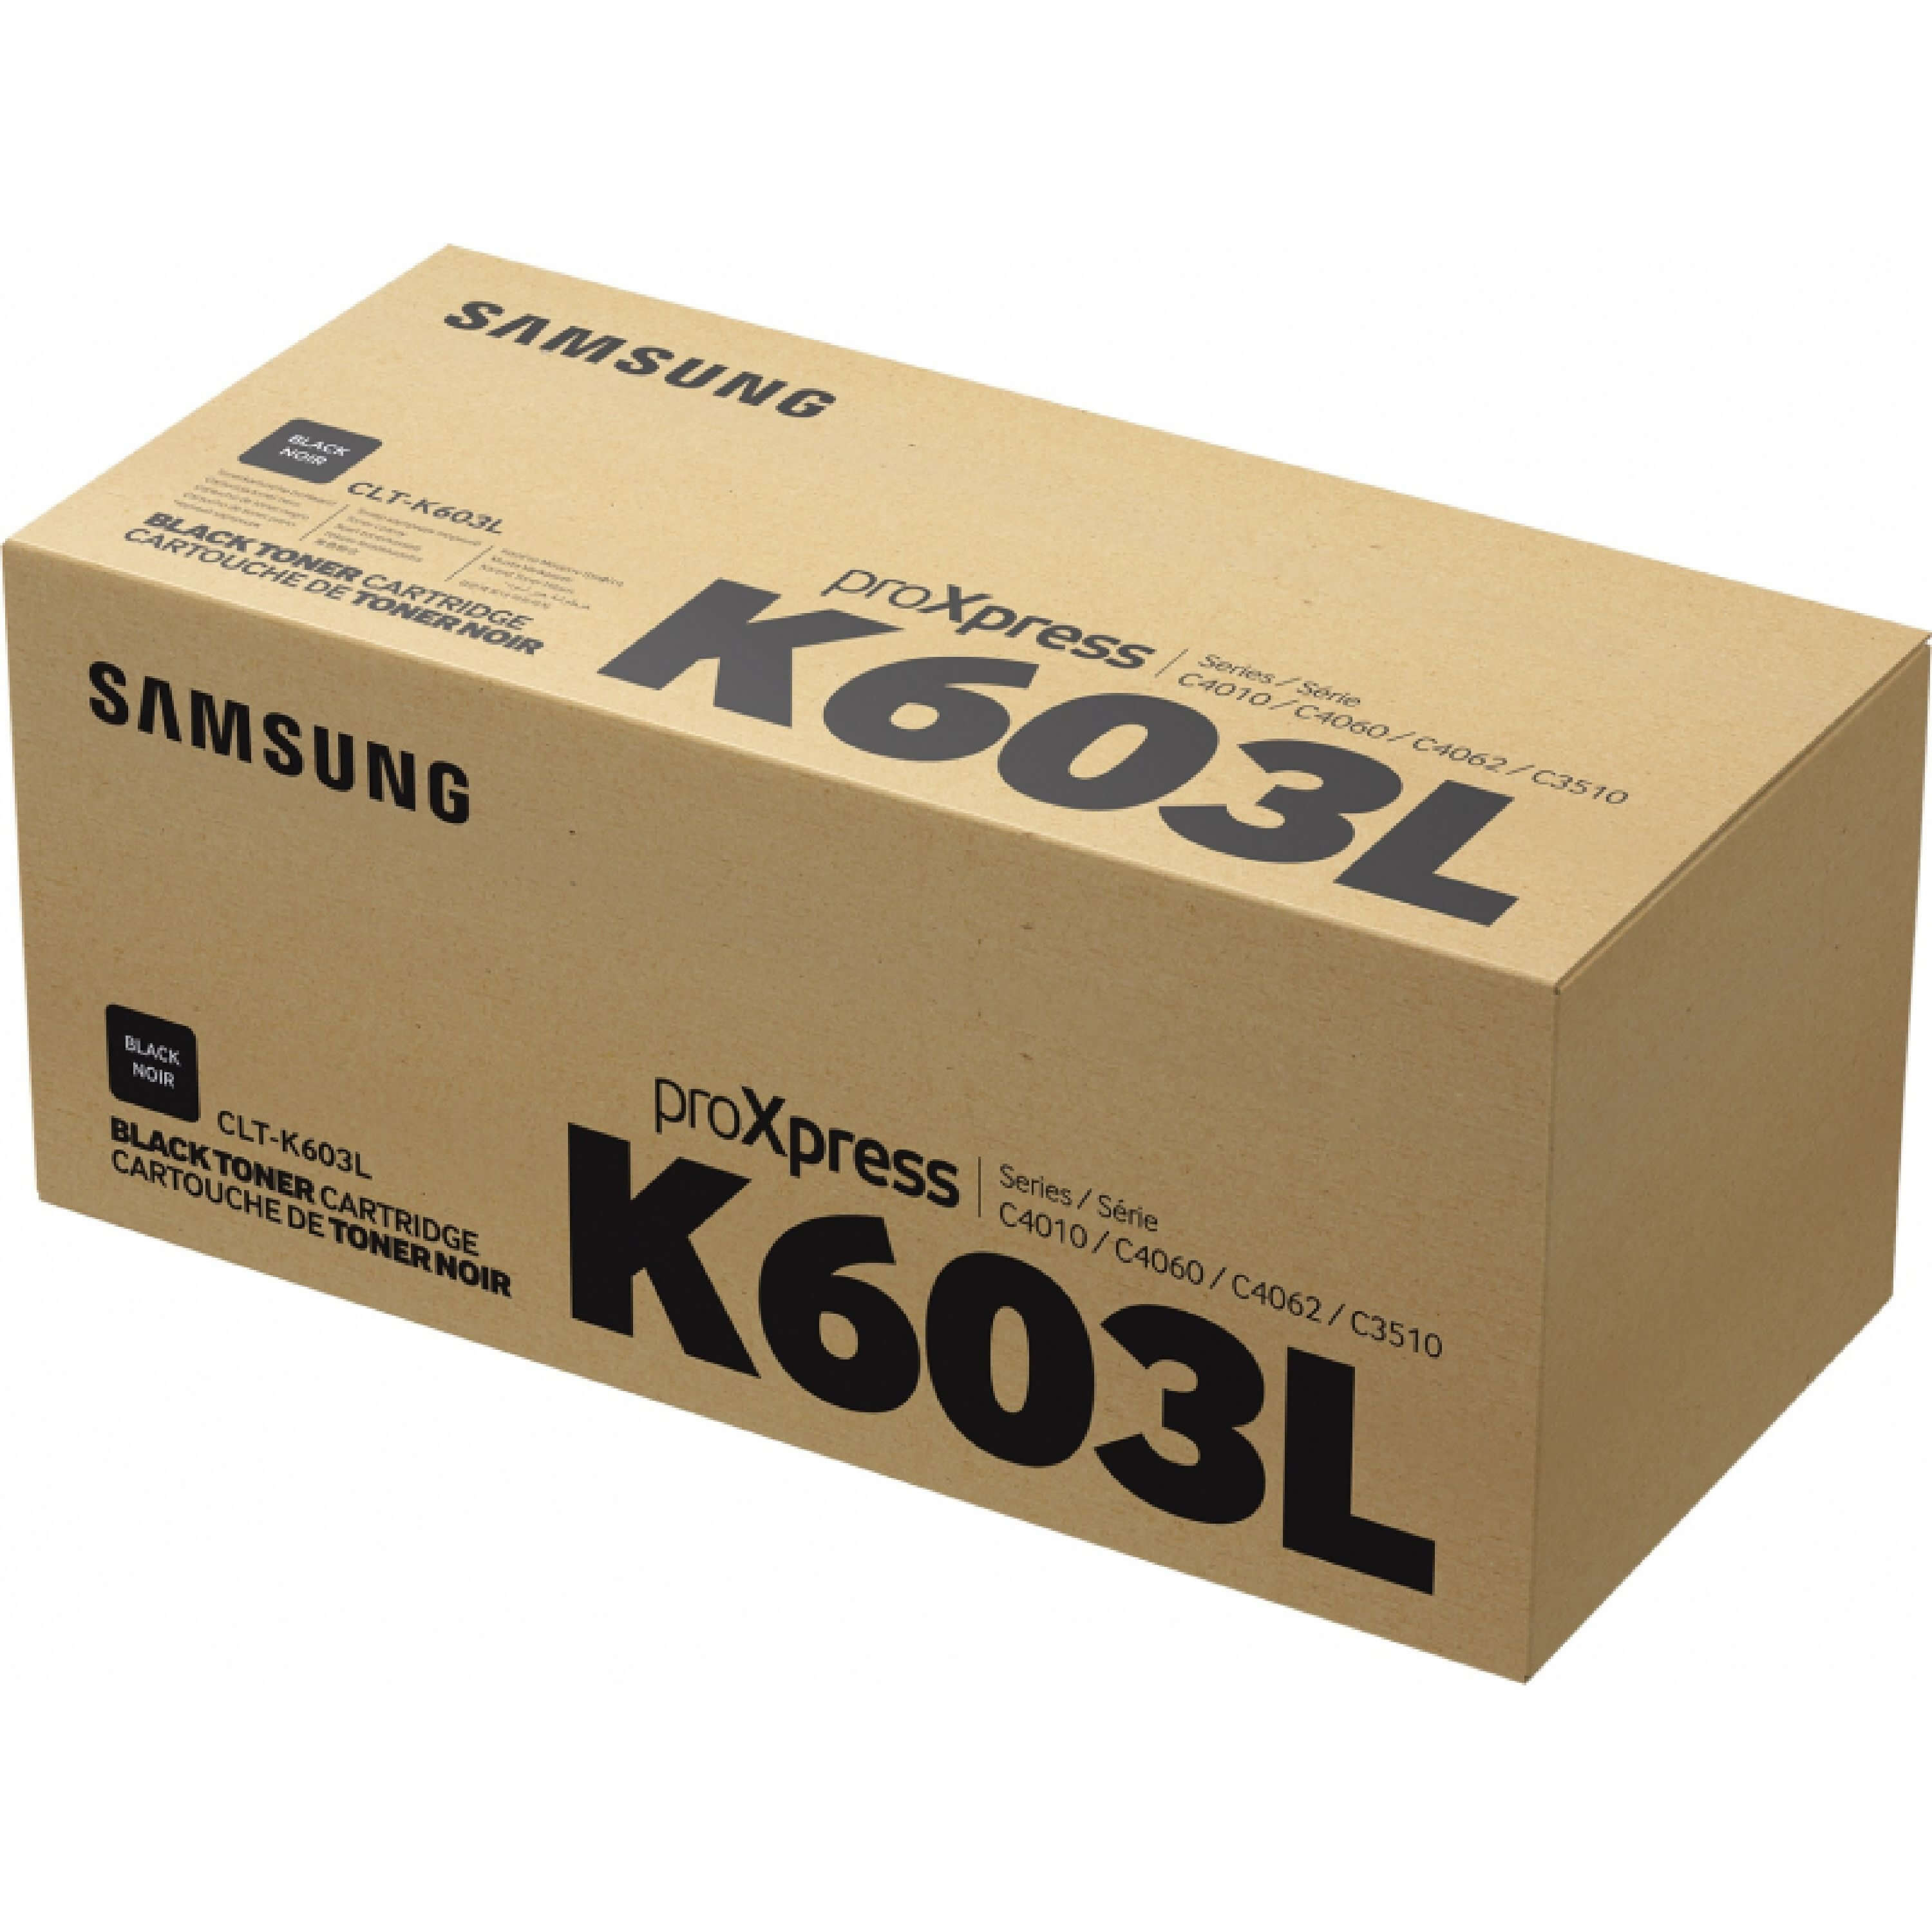 Original Toner Samsung ProXpress C 4060 ND (SU214A / CLT-K603L)